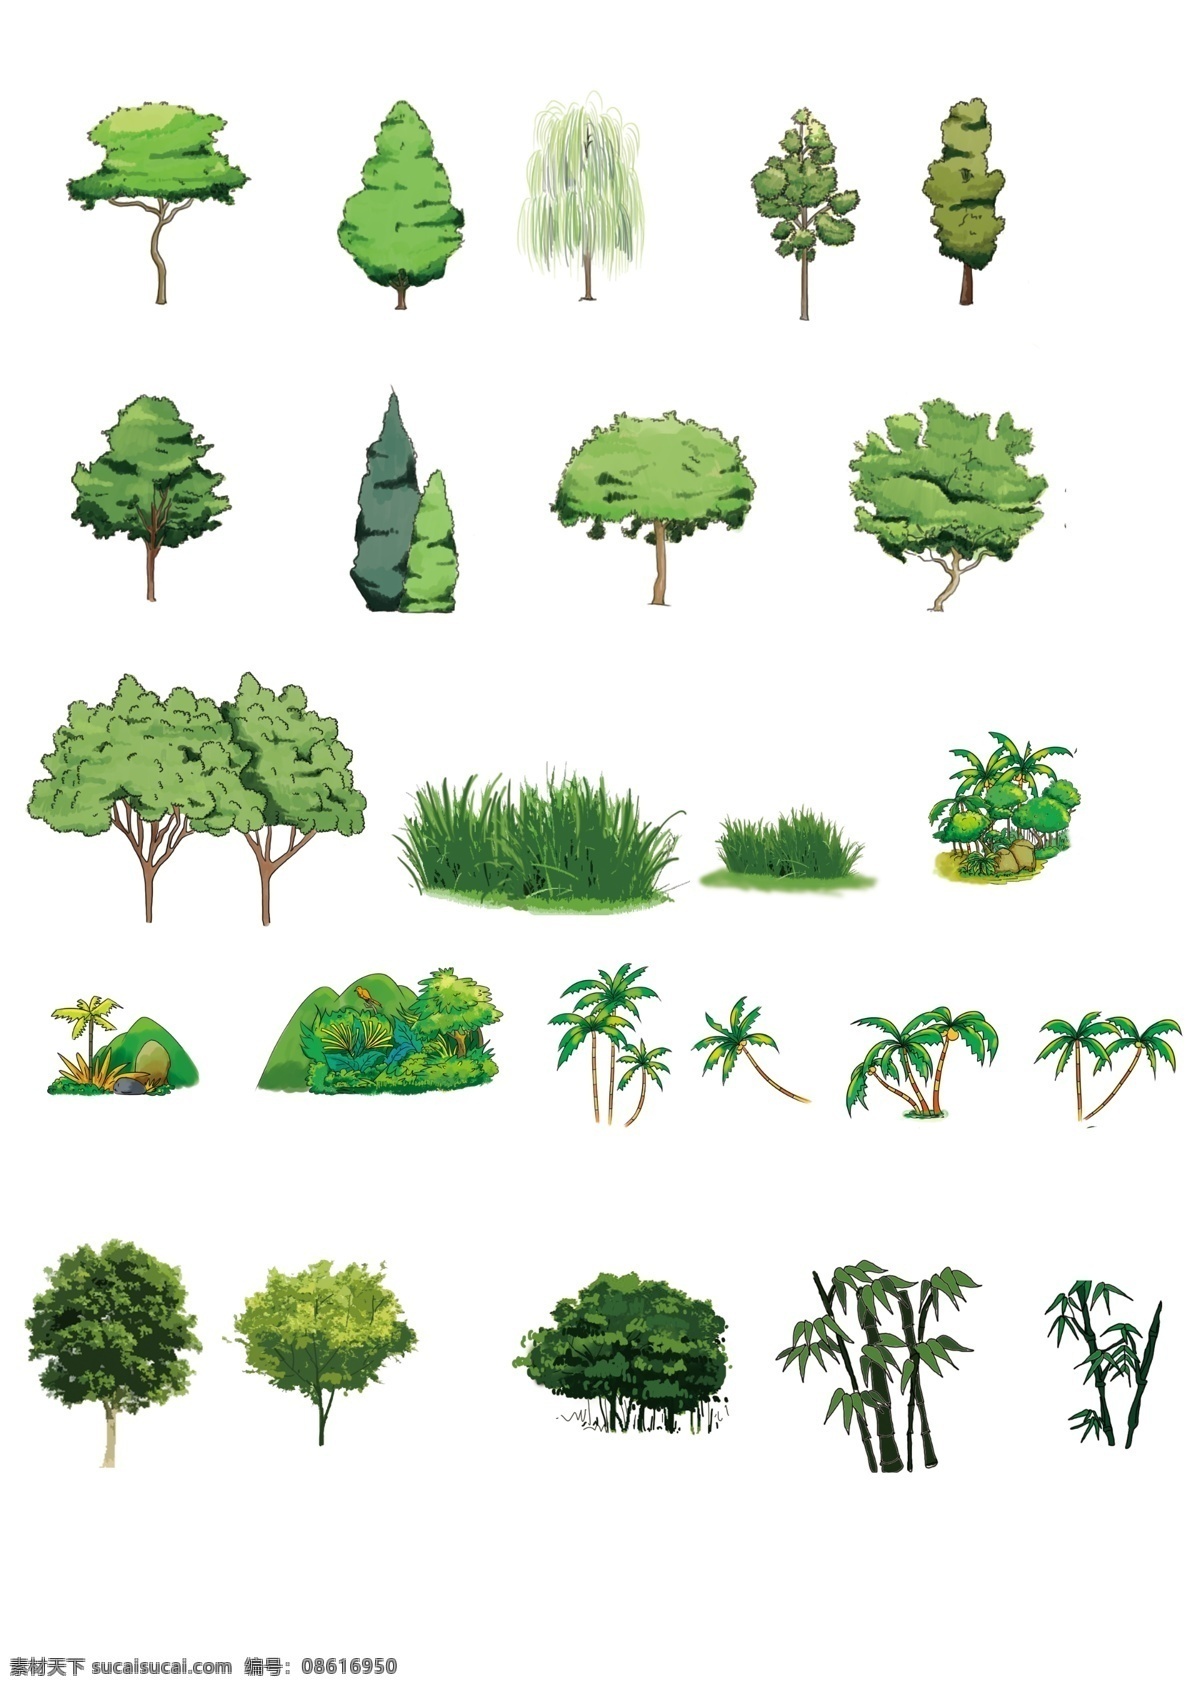 卡通植物 柳树 松树 草丛 杨树 各种树 素材小内容 生物世界 树木树叶